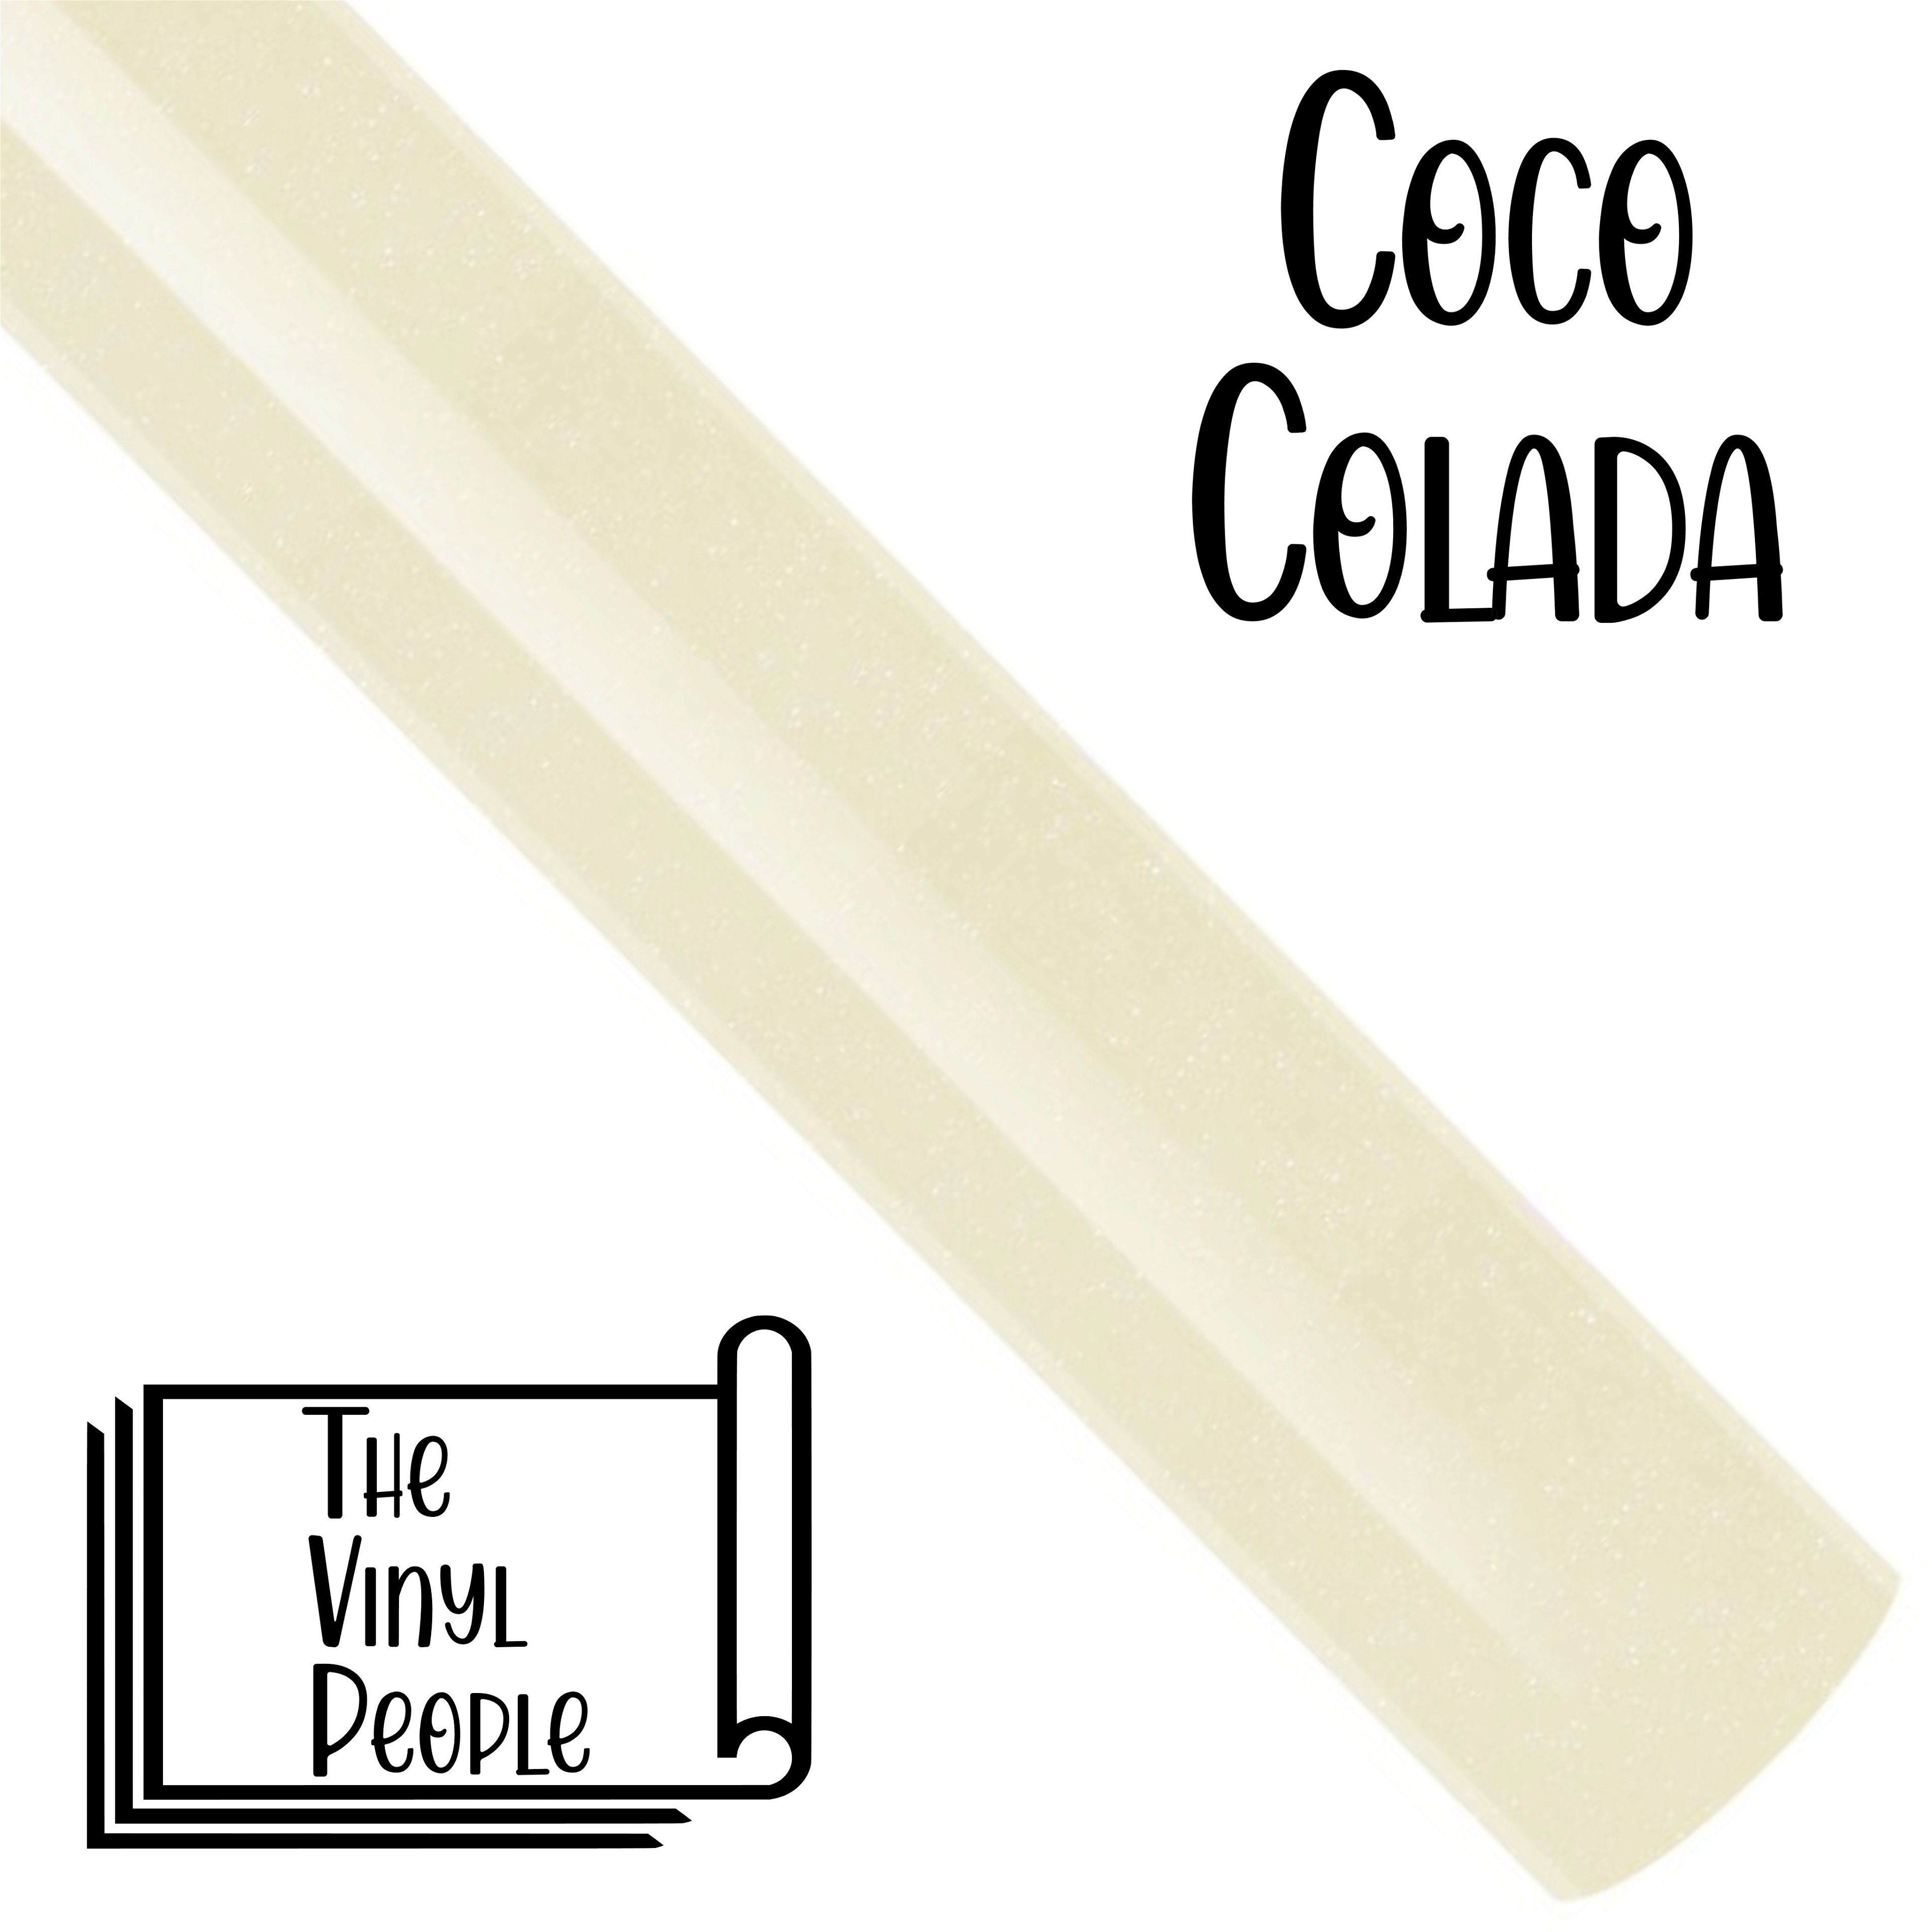 Coco Colada - 12" x 24" roll